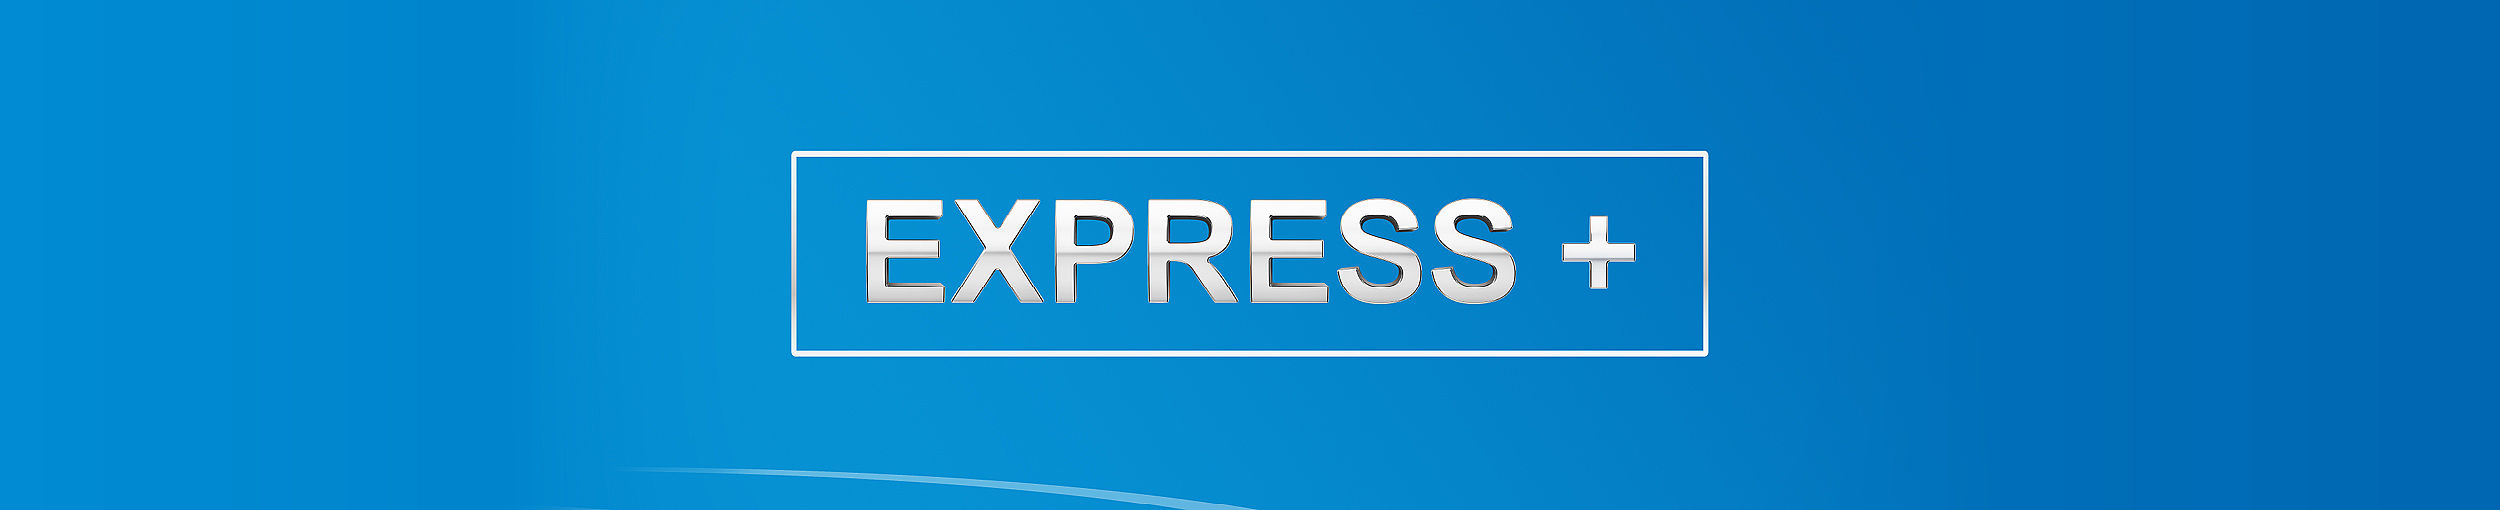 Express+ beschreibt unsere schneller Reaktion auf Kundenanfragen.